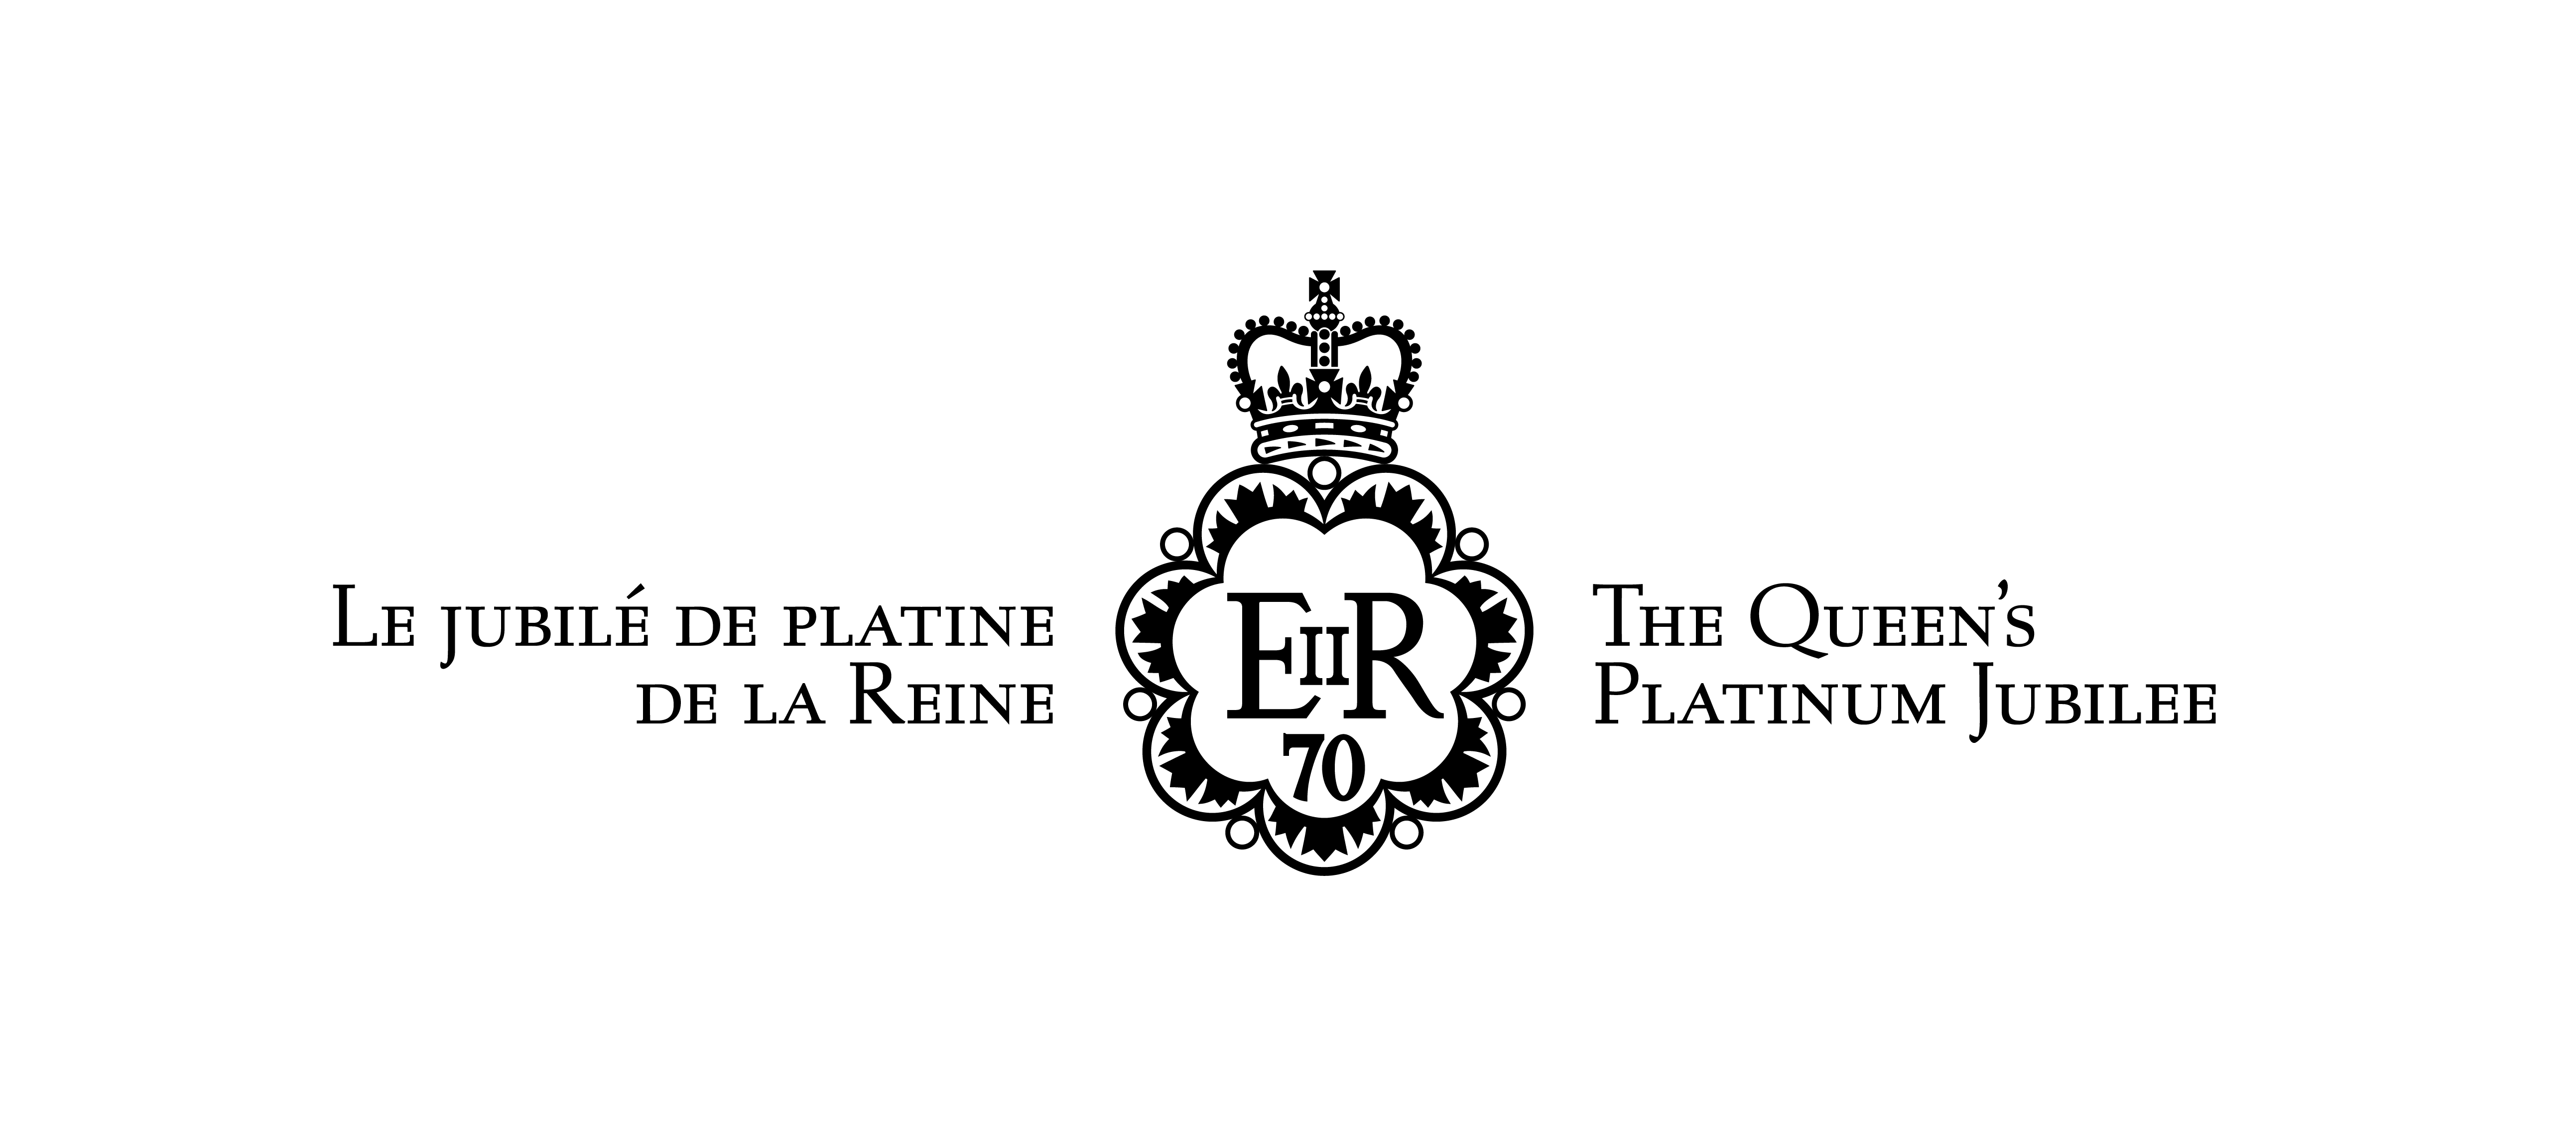 Version centrée et en noir-et-blanc de l’emblème canadien du jubilé de platine avec texte : Le jubilé de platine de la Reine